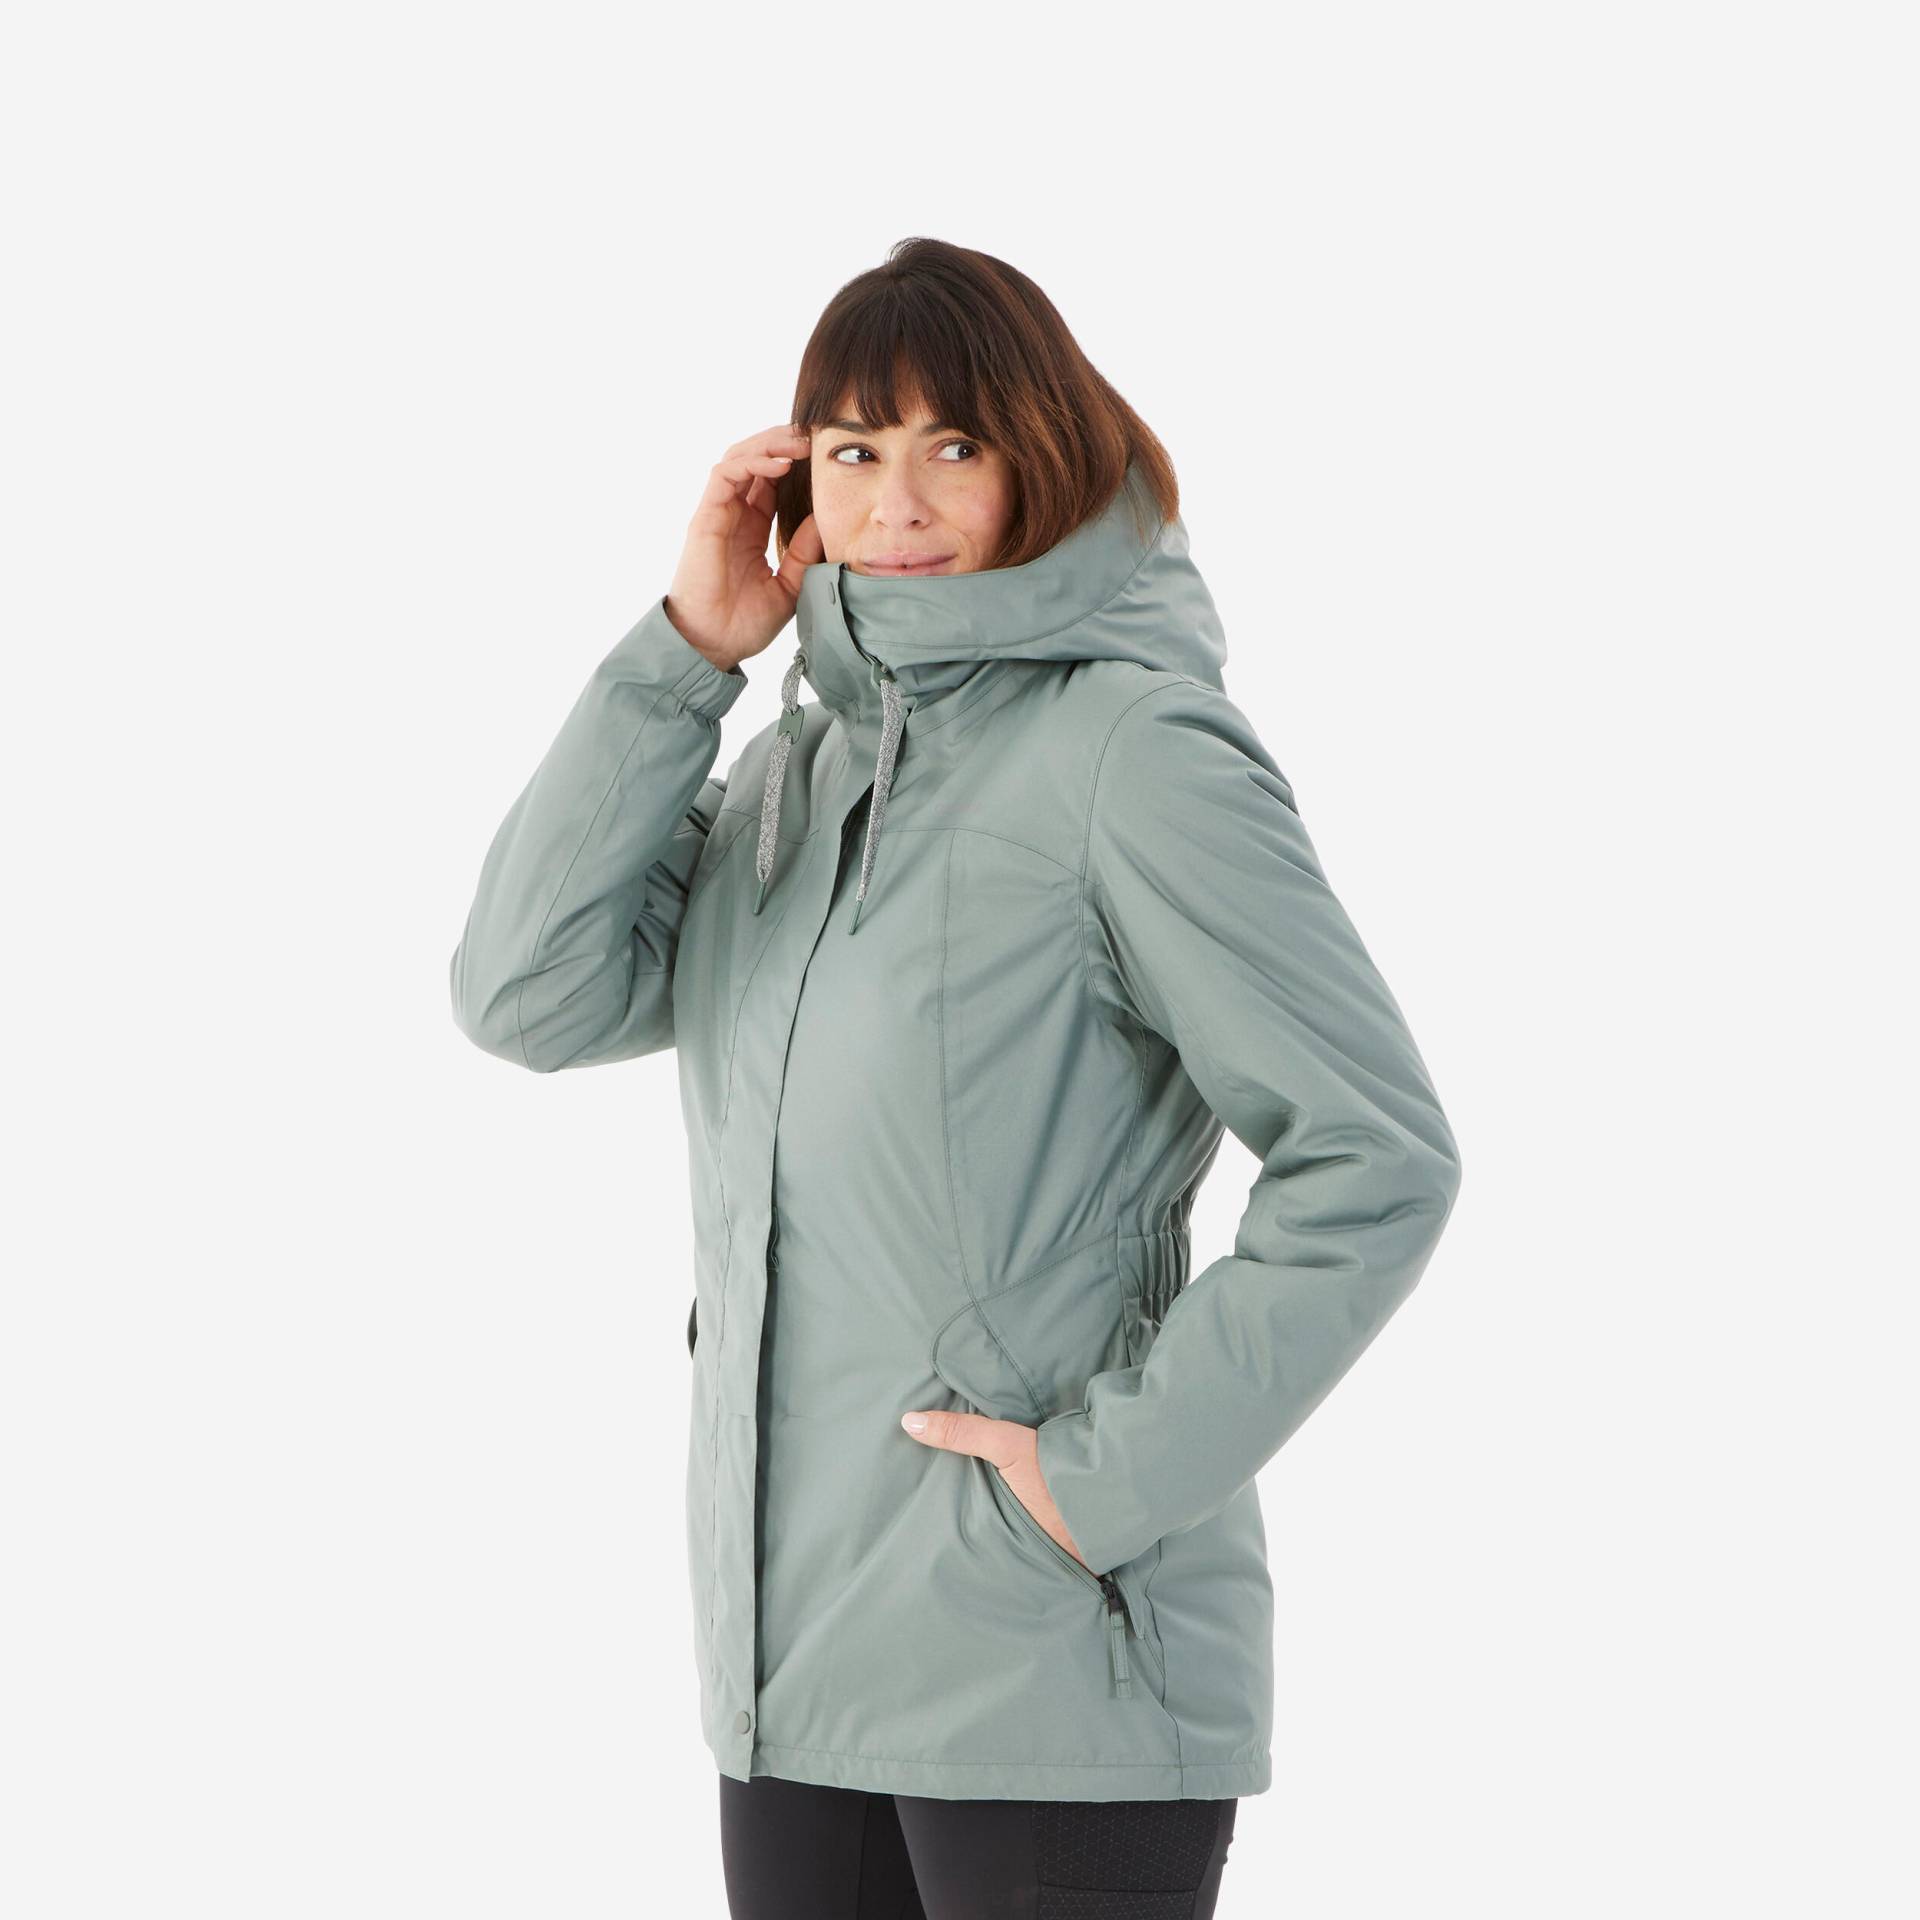 Winterjacke Damen bis -10 °C wasserdicht Winterwandern - SH500 khaki von QUECHUA